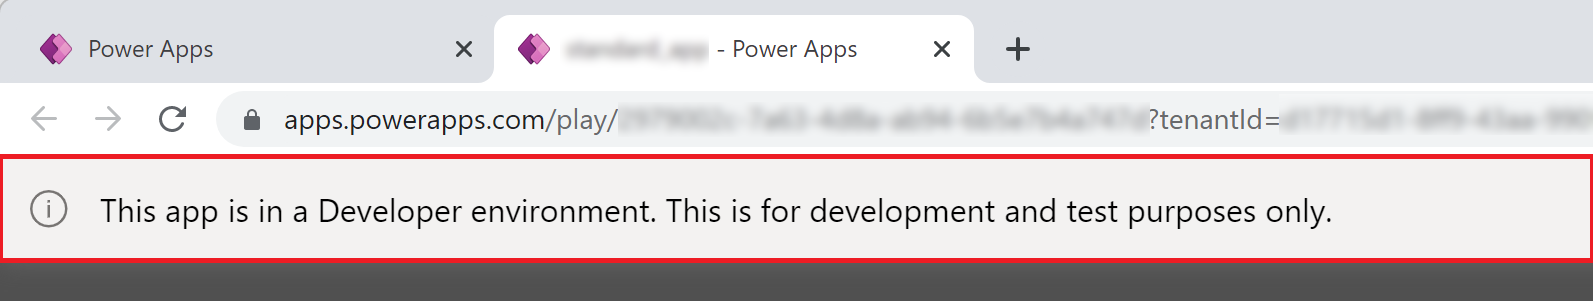 Banner de aplicativos no ambiente do desenvolvedor do Power Apps.